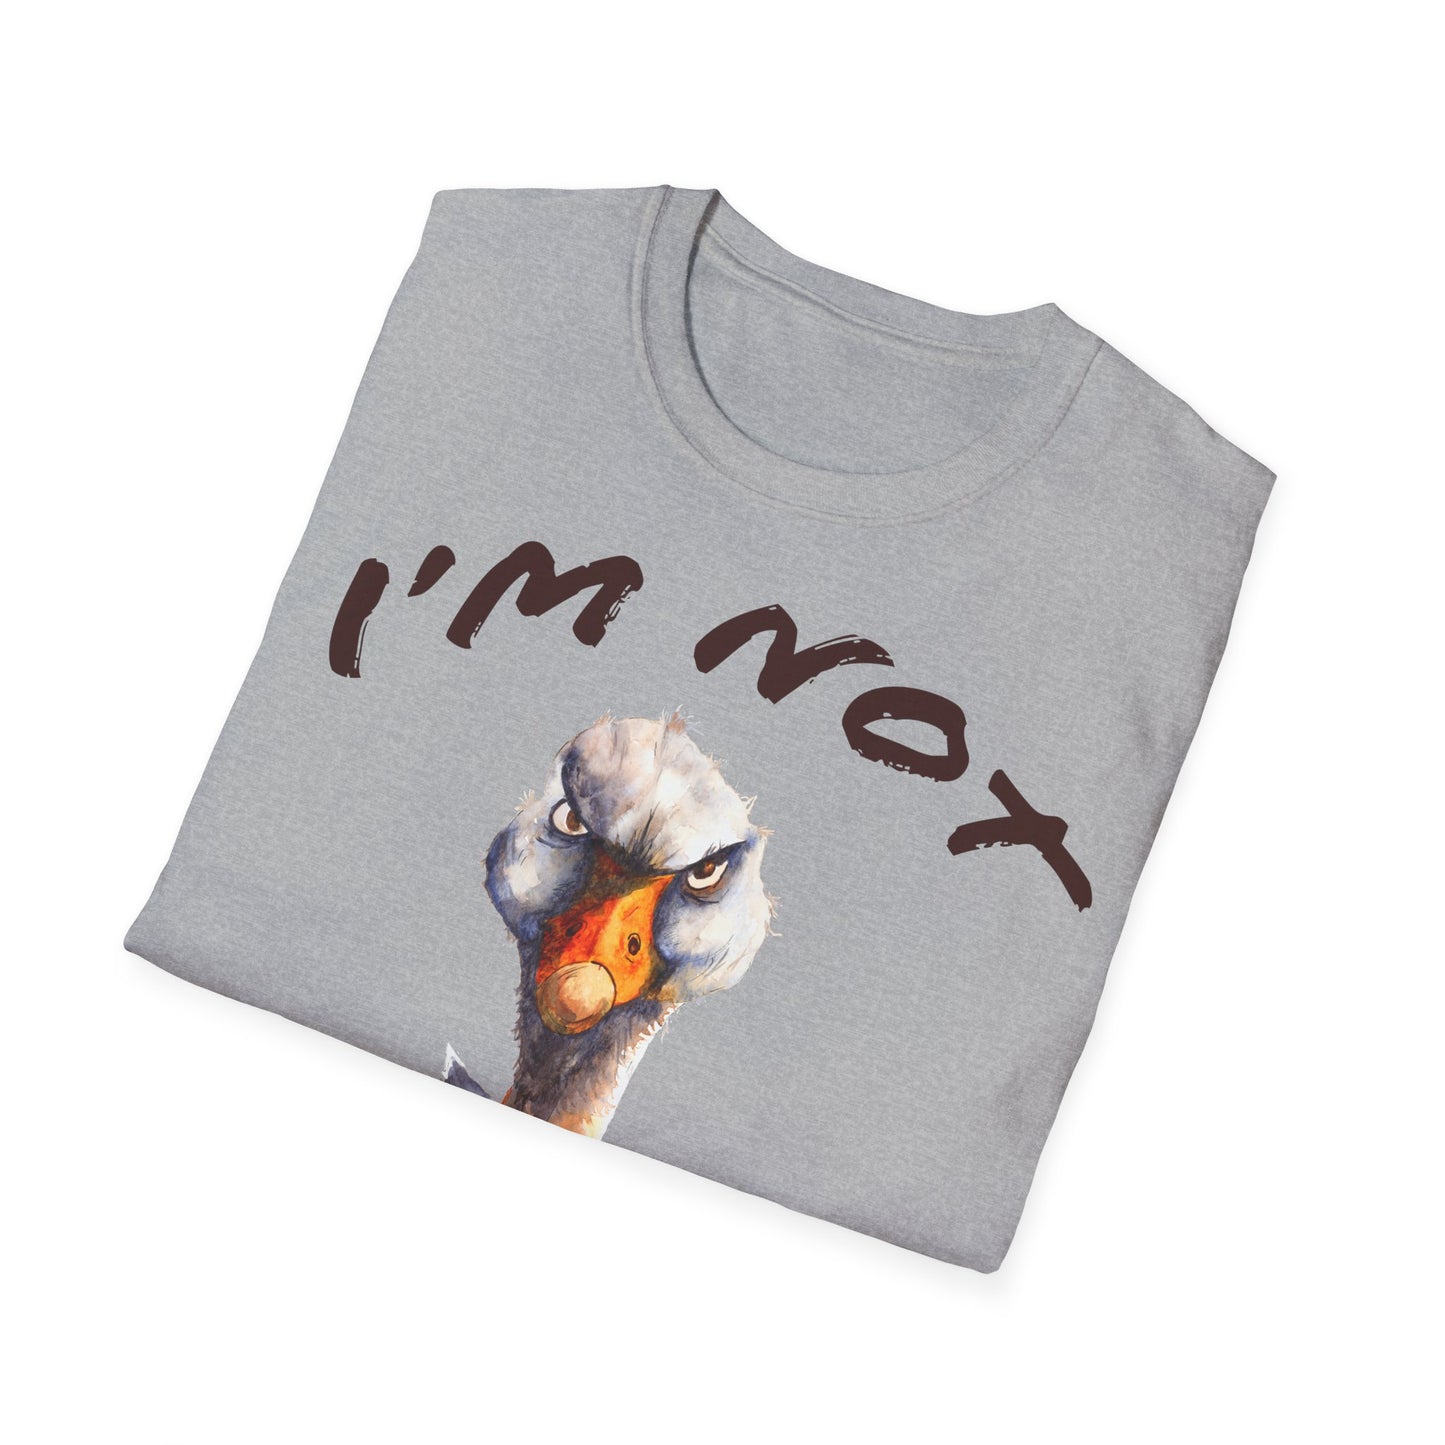 MyT-shirtFunny: Unisex t-shirt/coffee/coffee t-shirt/coffee t-shirt/coffee quotes/t-shirt with coffee quotes/funny t-shirt